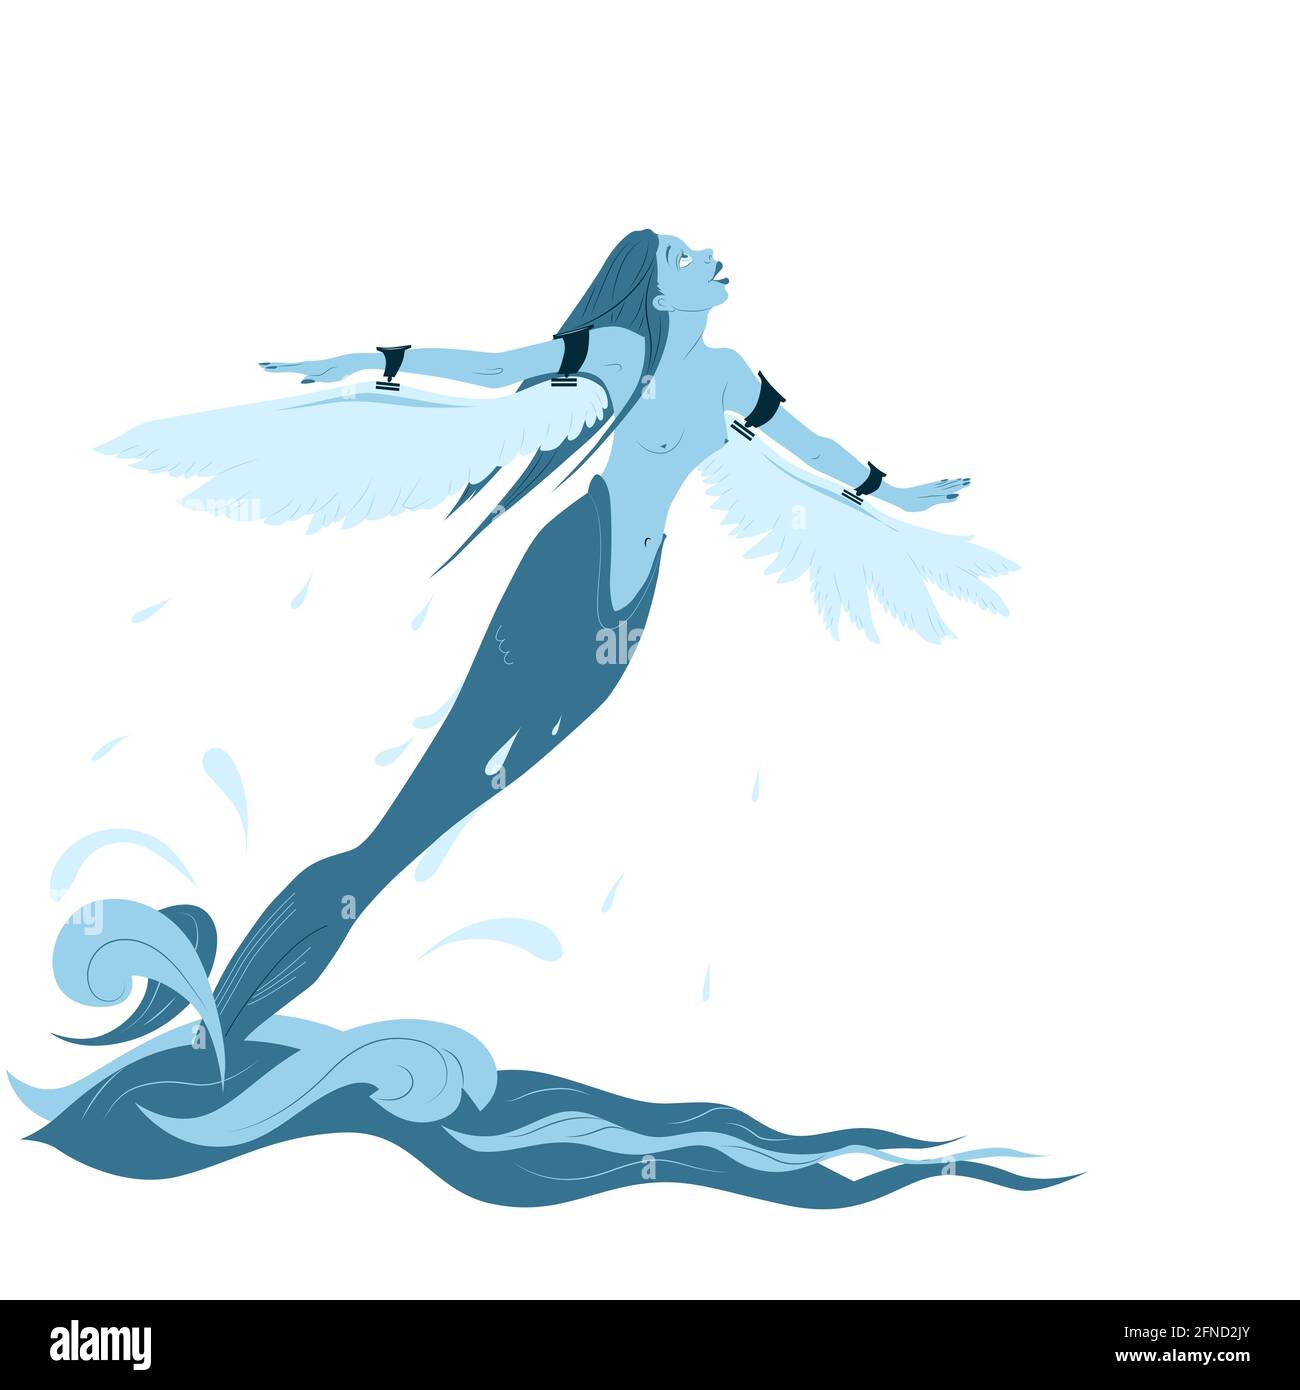 L'ambiance est de voler! La sirène de personnage de conte de fées avec ailes attachées déchaîne la mer. Le concept de la liberté de la convention. Imprimer, tatouage, pos Illustration de Vecteur